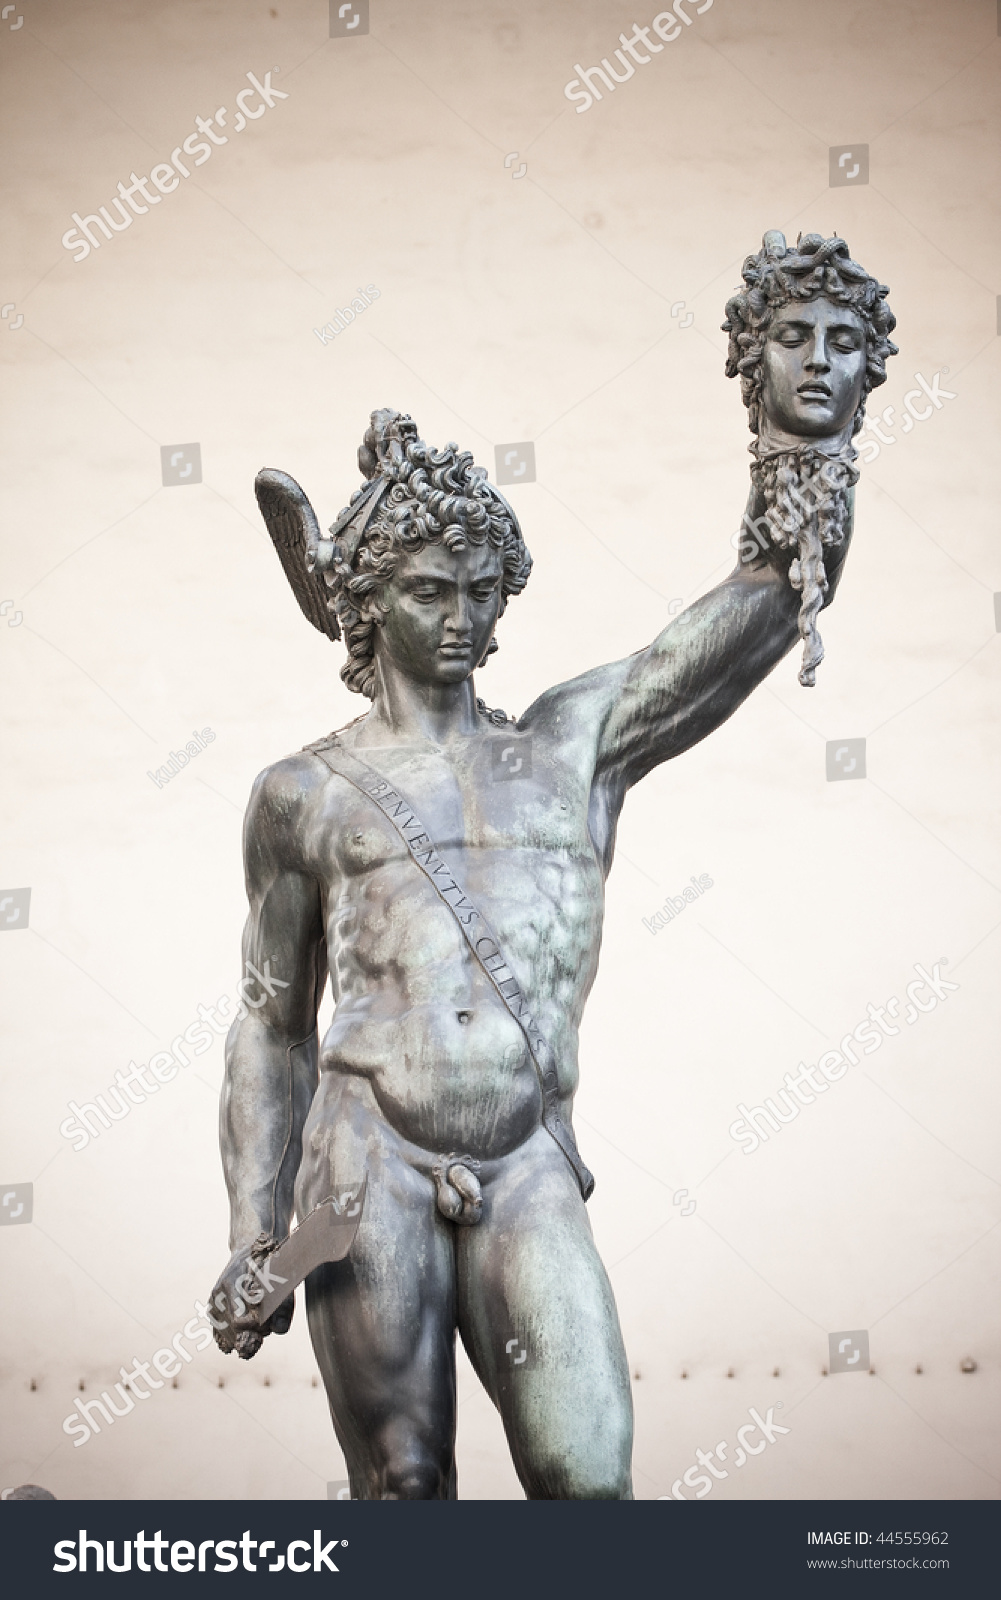 メドゥーサの頭を持つペルセウスの銅像 の写真素材 今すぐ編集